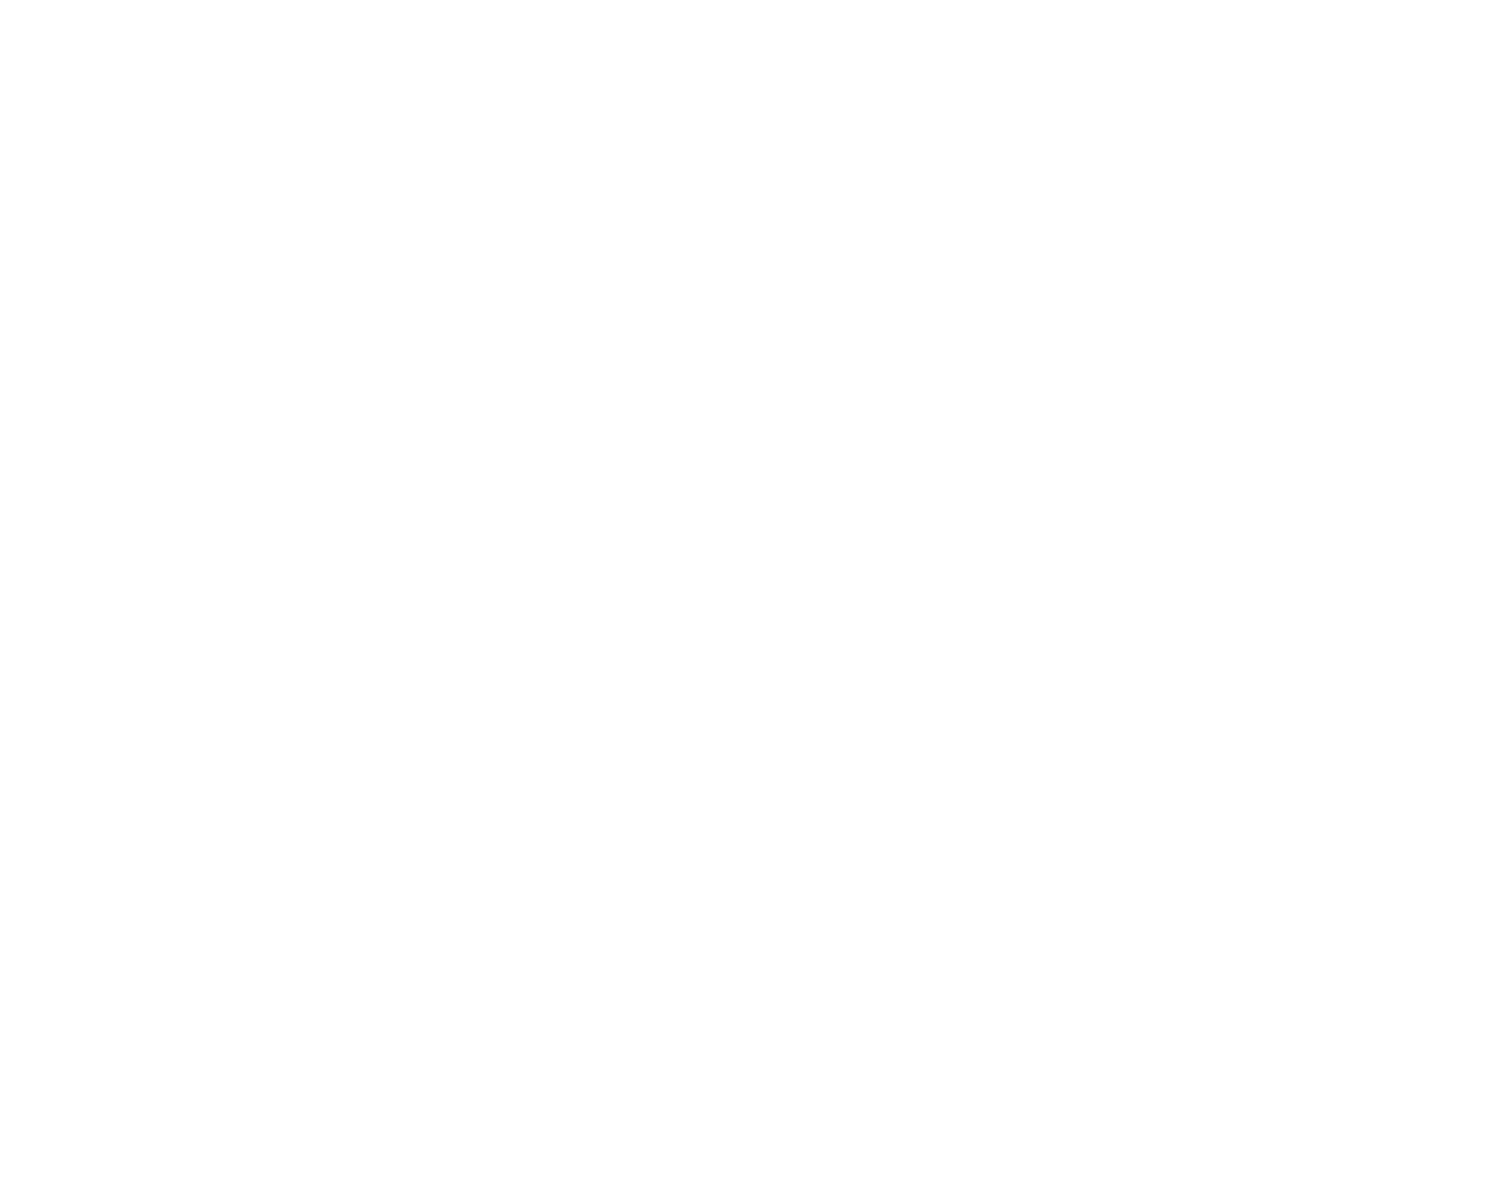 Ebexco